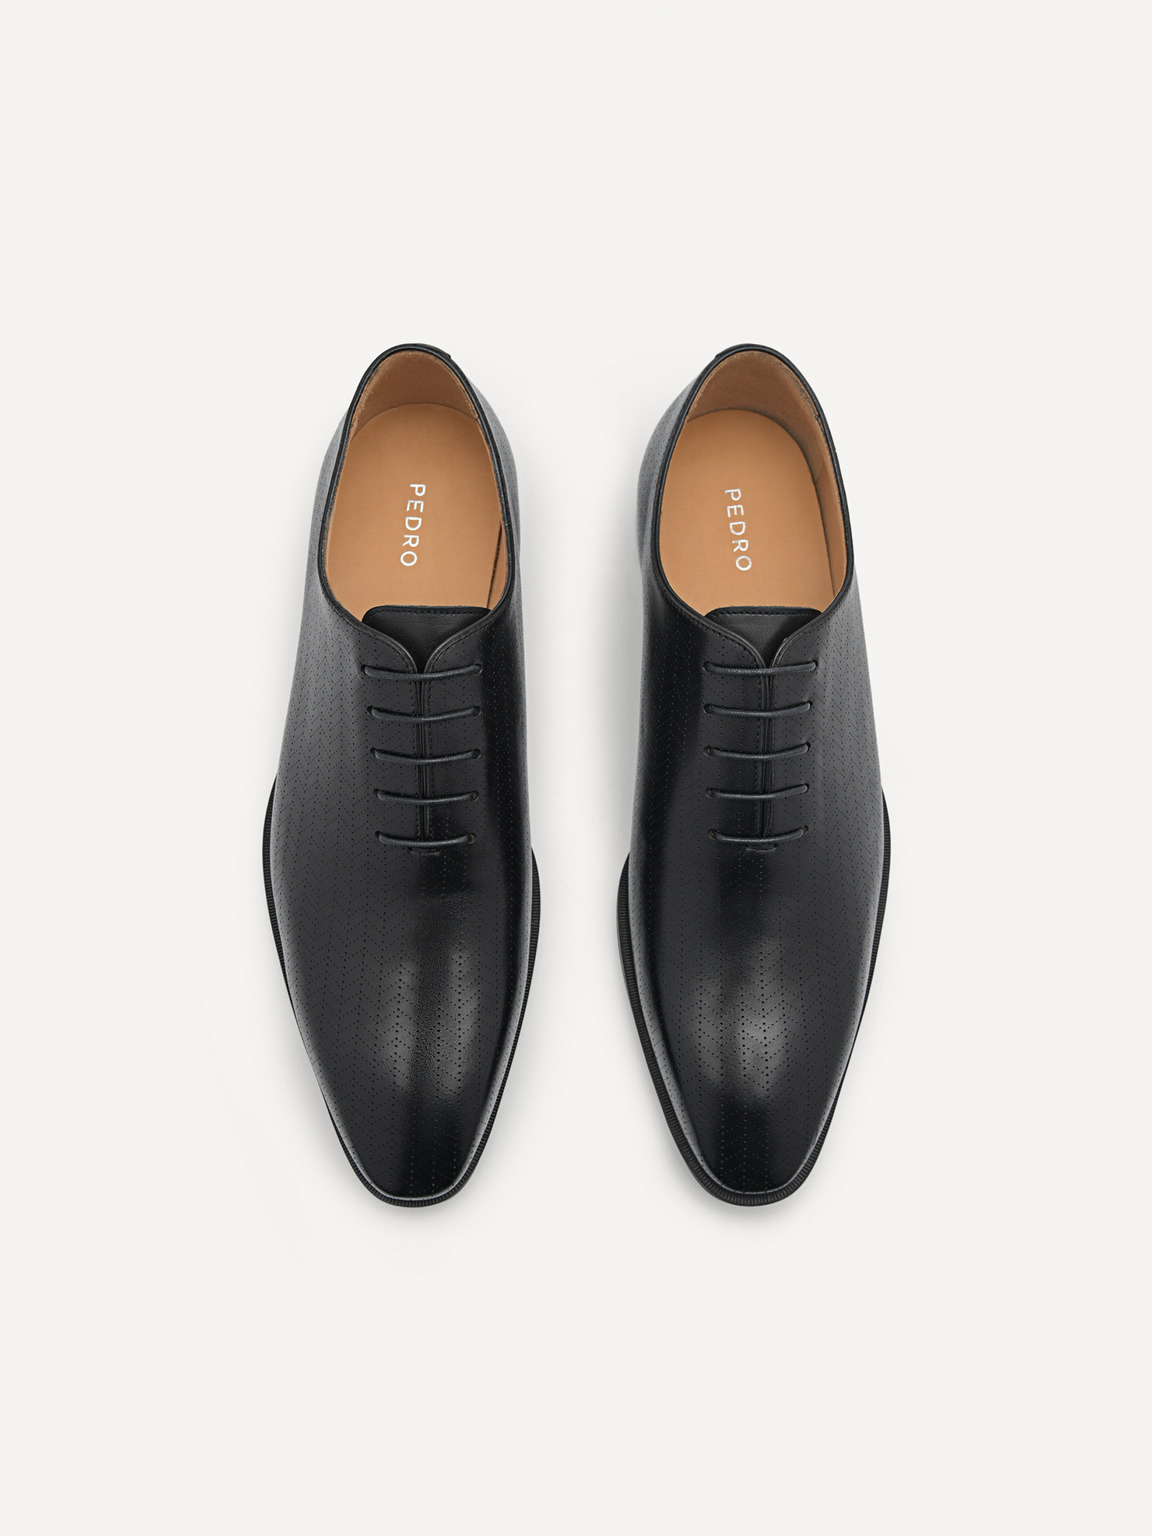 壓紋皮革牛津鞋, 黑色